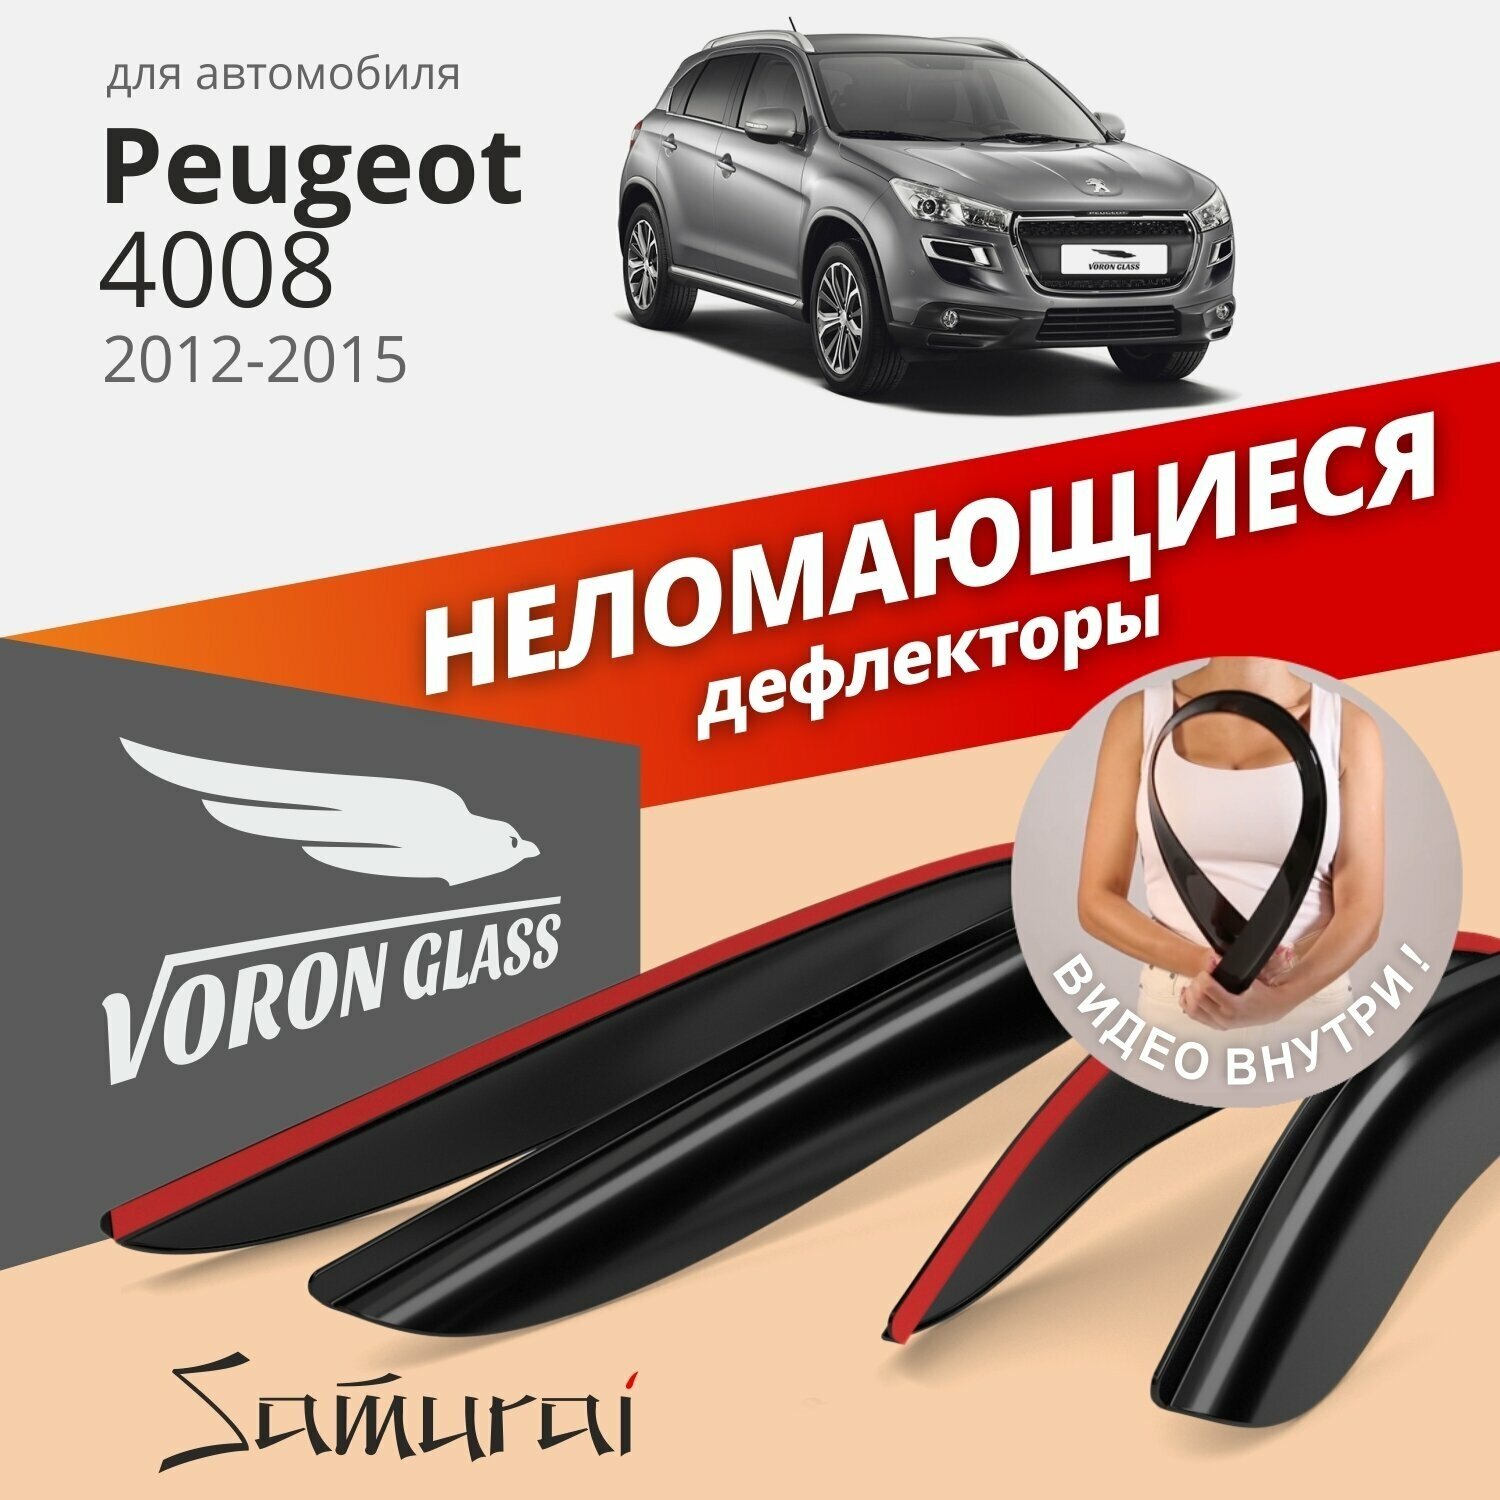 Дефлекторы Voron Glass Peugeot 4008 2012-2017